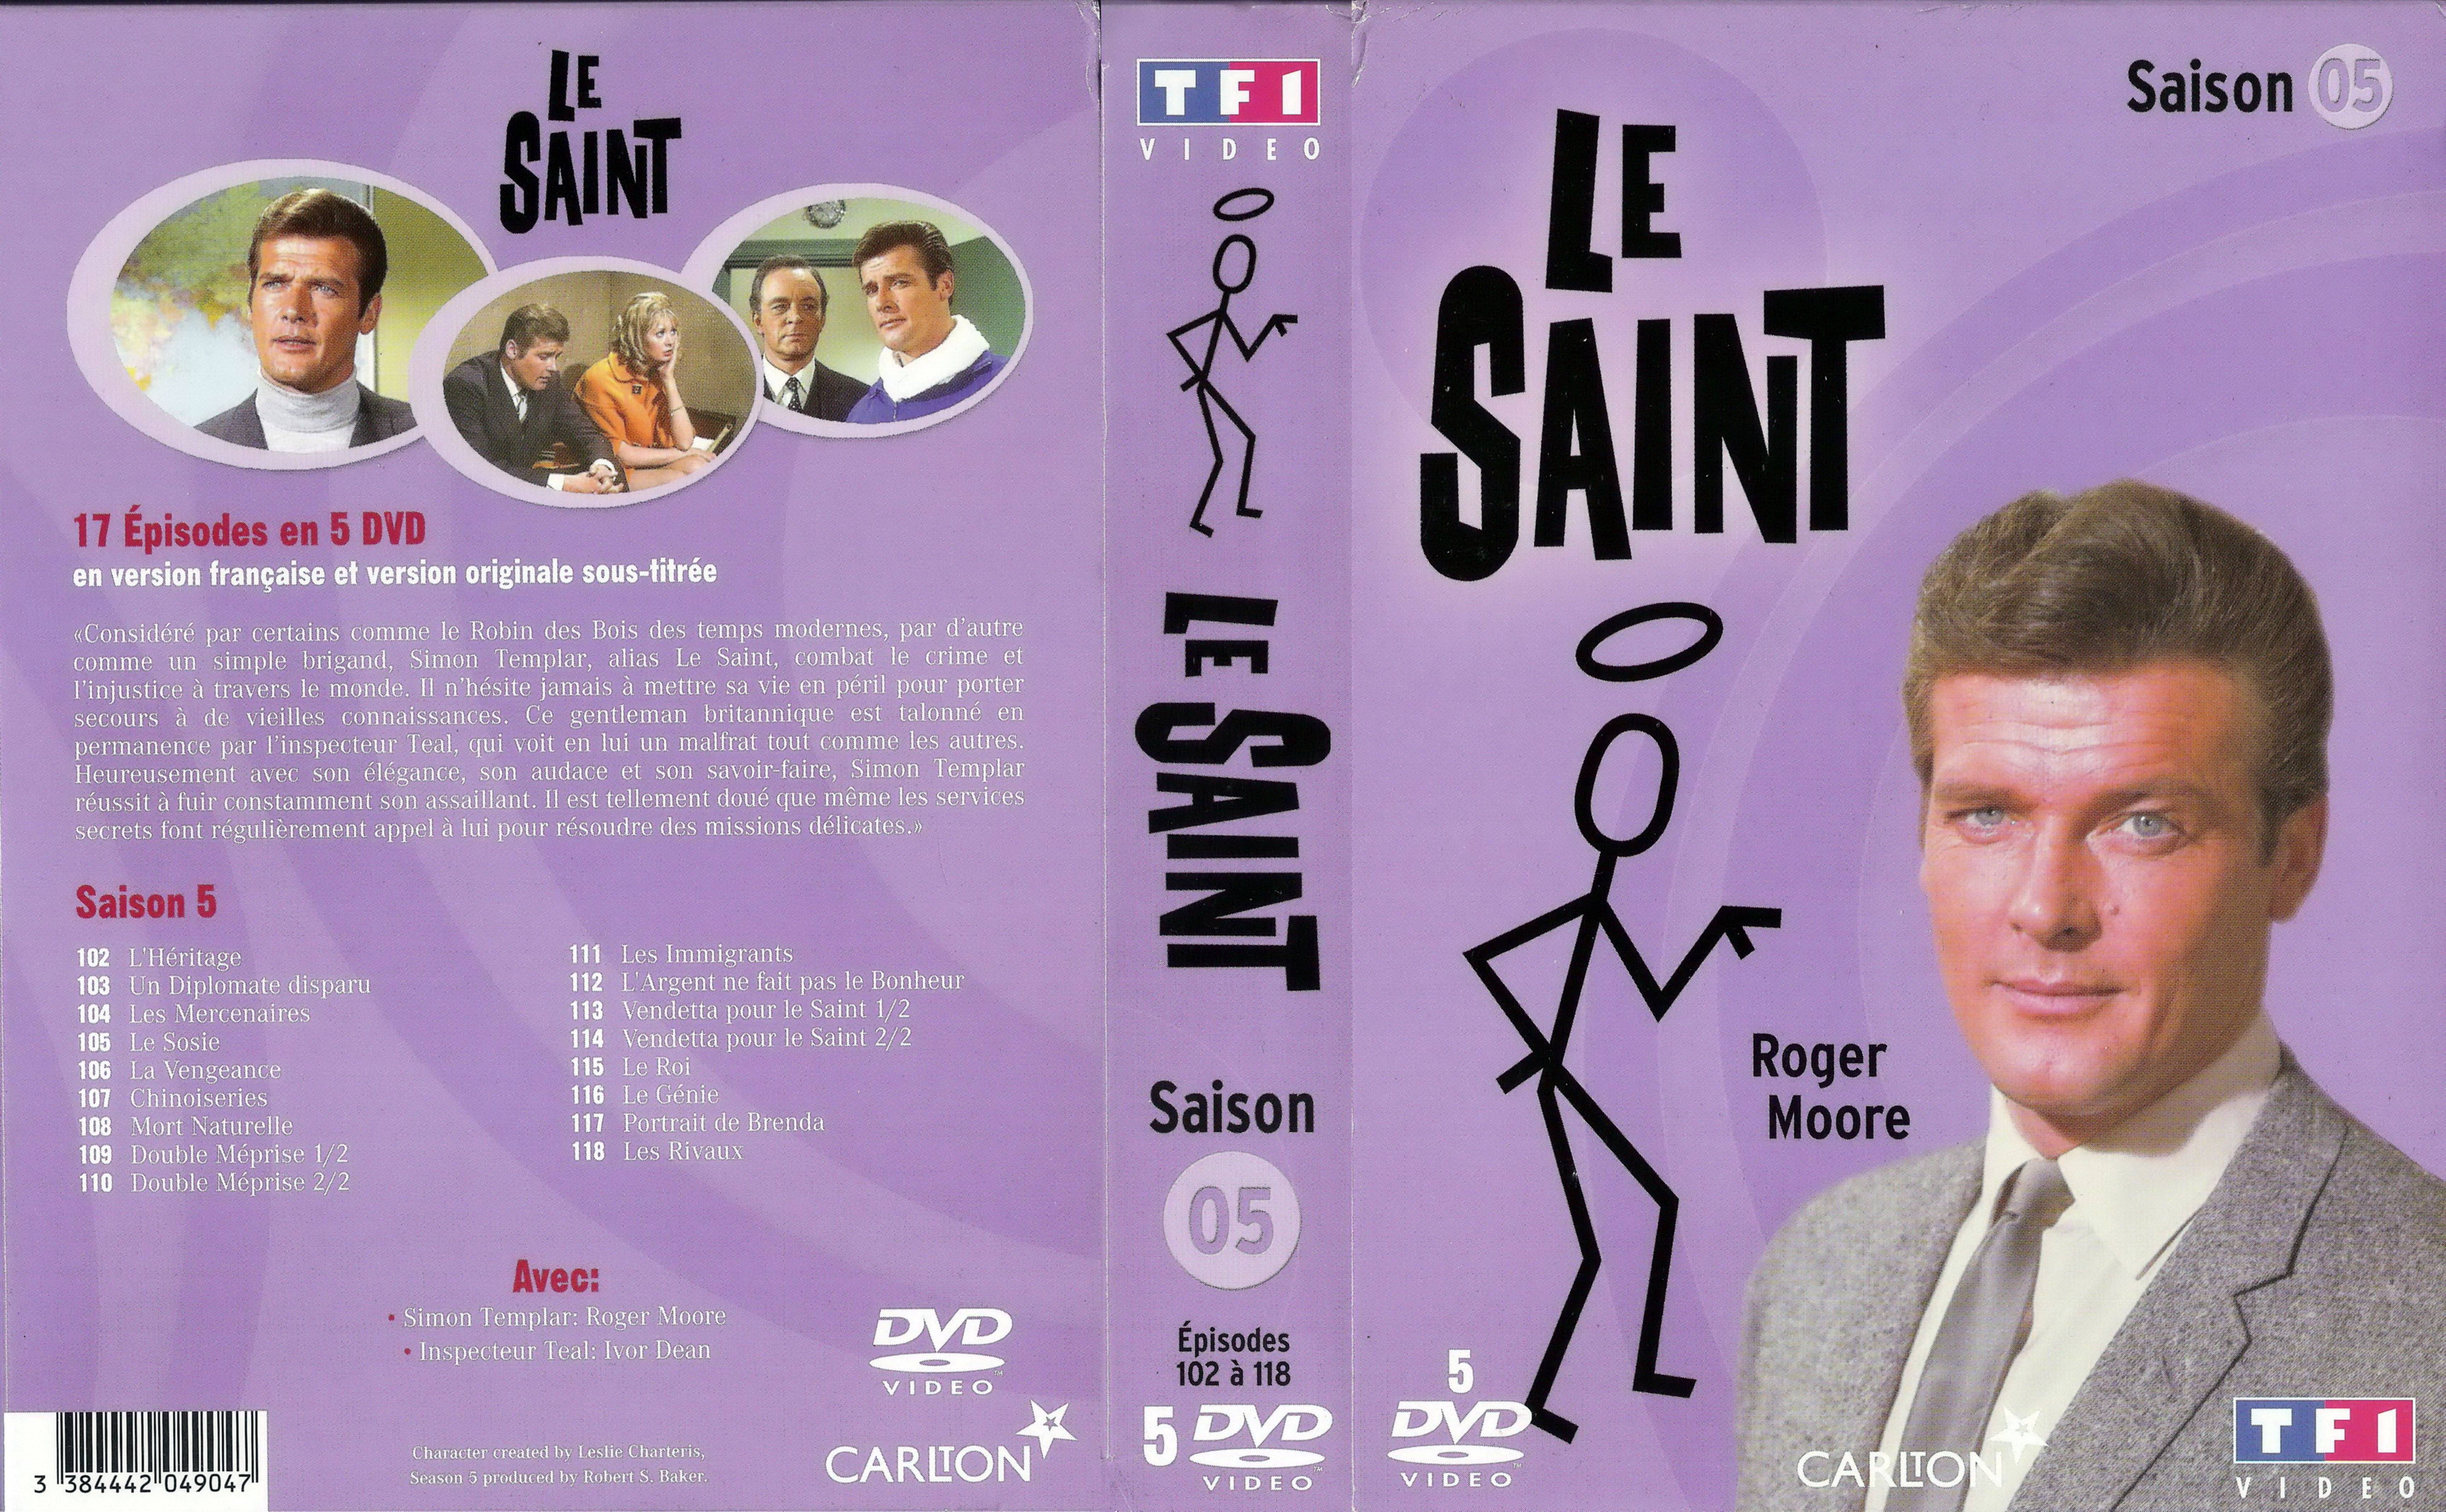 Jaquette DVD Le saint saison 5 COFFRET